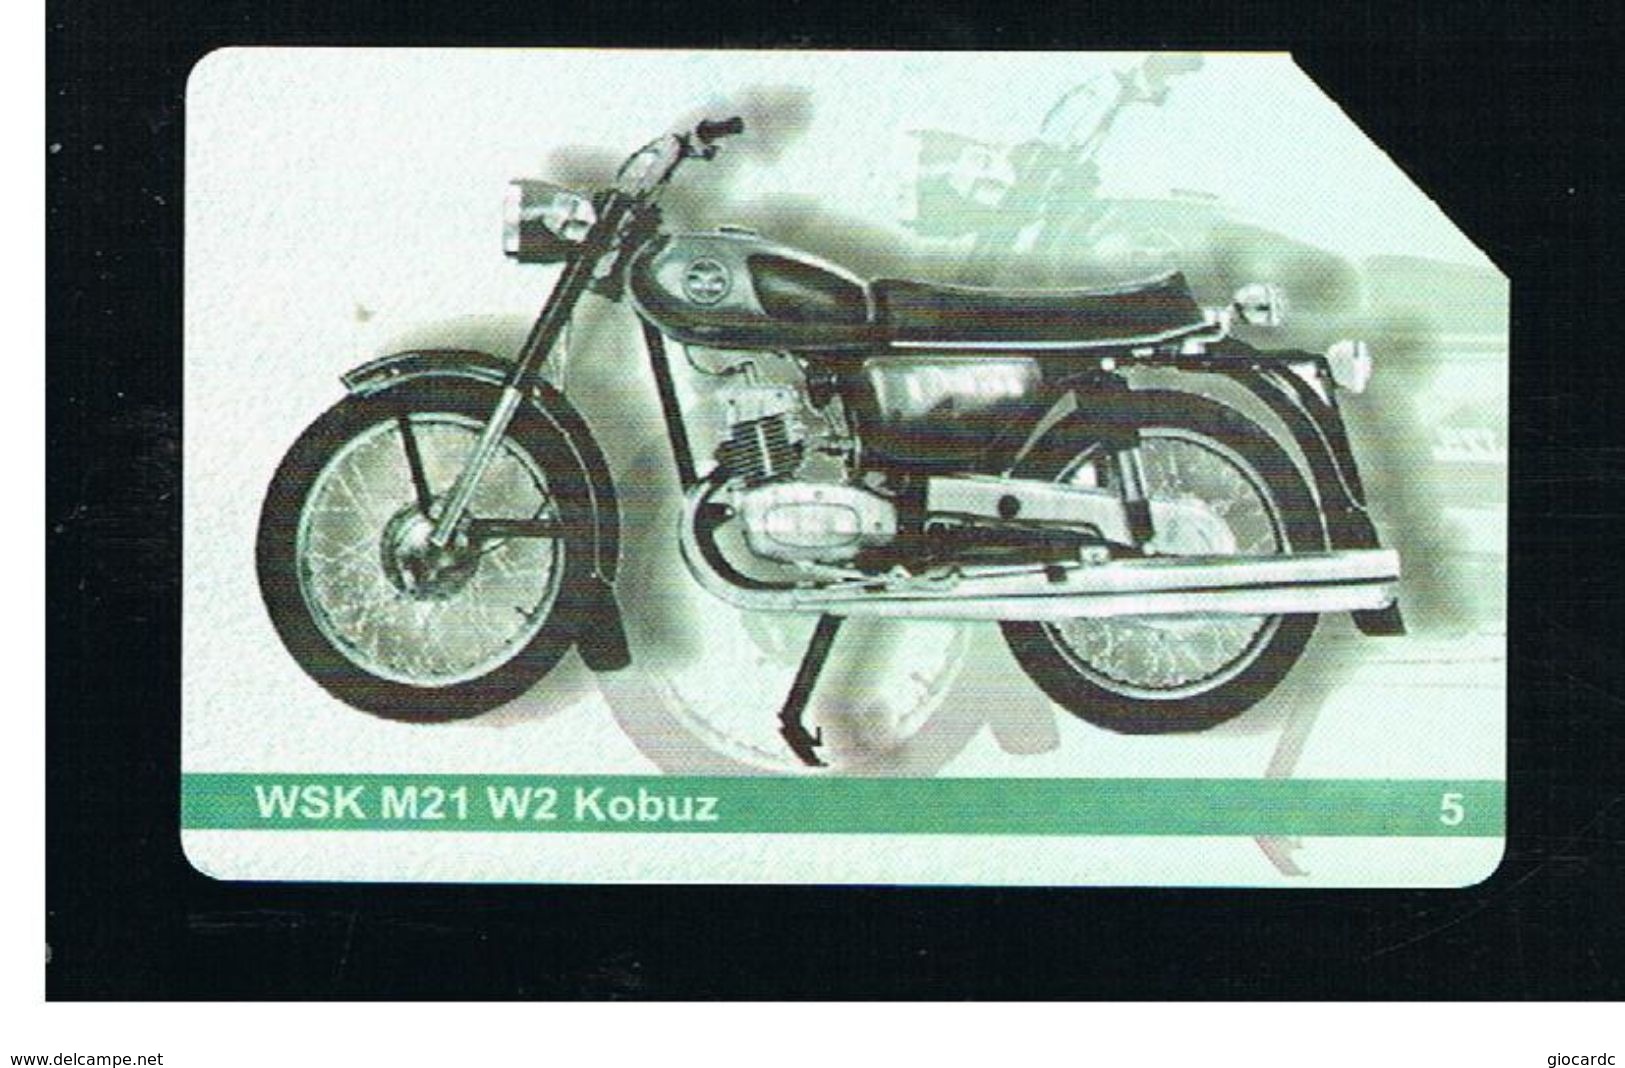 POLONIA (POLAND) - TP  - MOTO: WSK M21 W2 KOBUZ - USED - RIF. 10242 - Motos